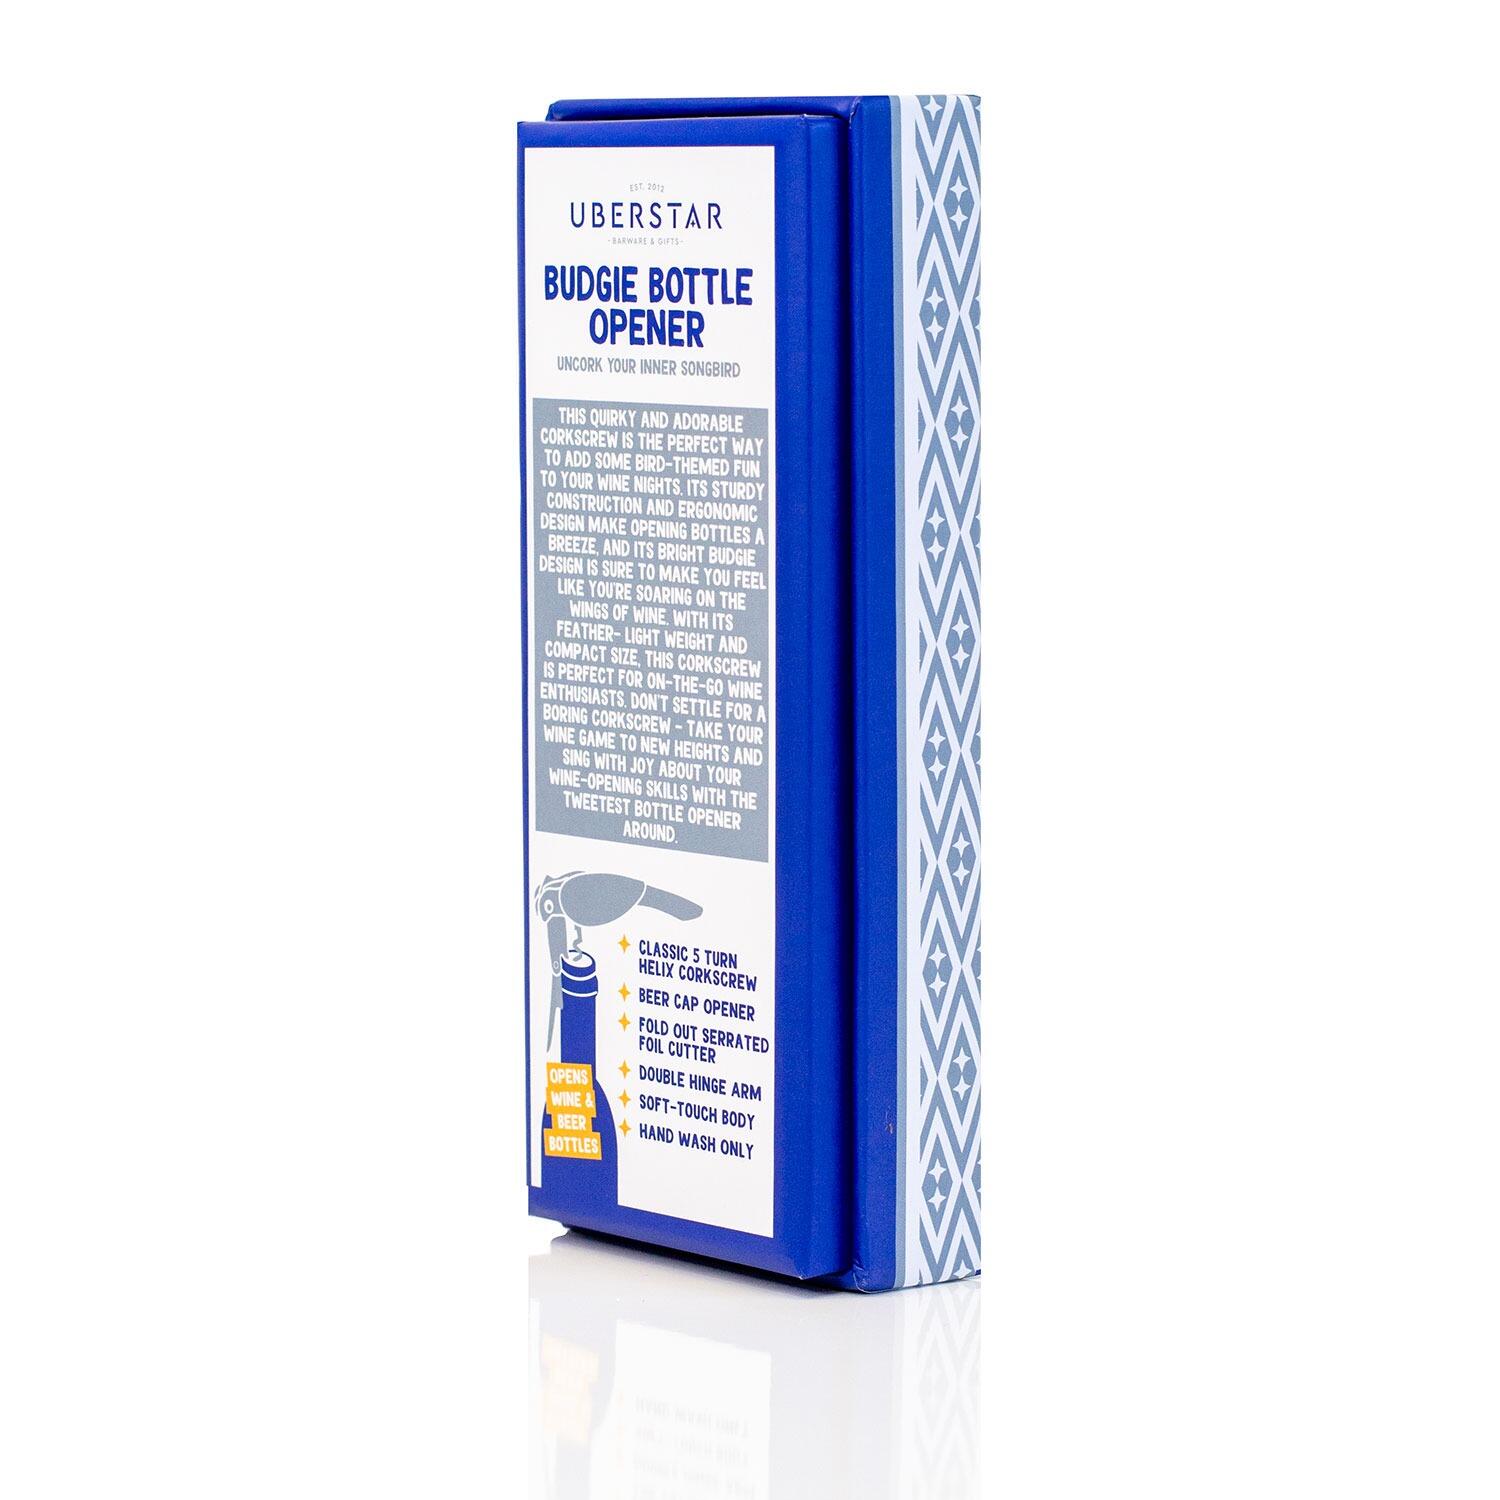 UBERSTAR Budgie Bottle Opener - Packaging Back